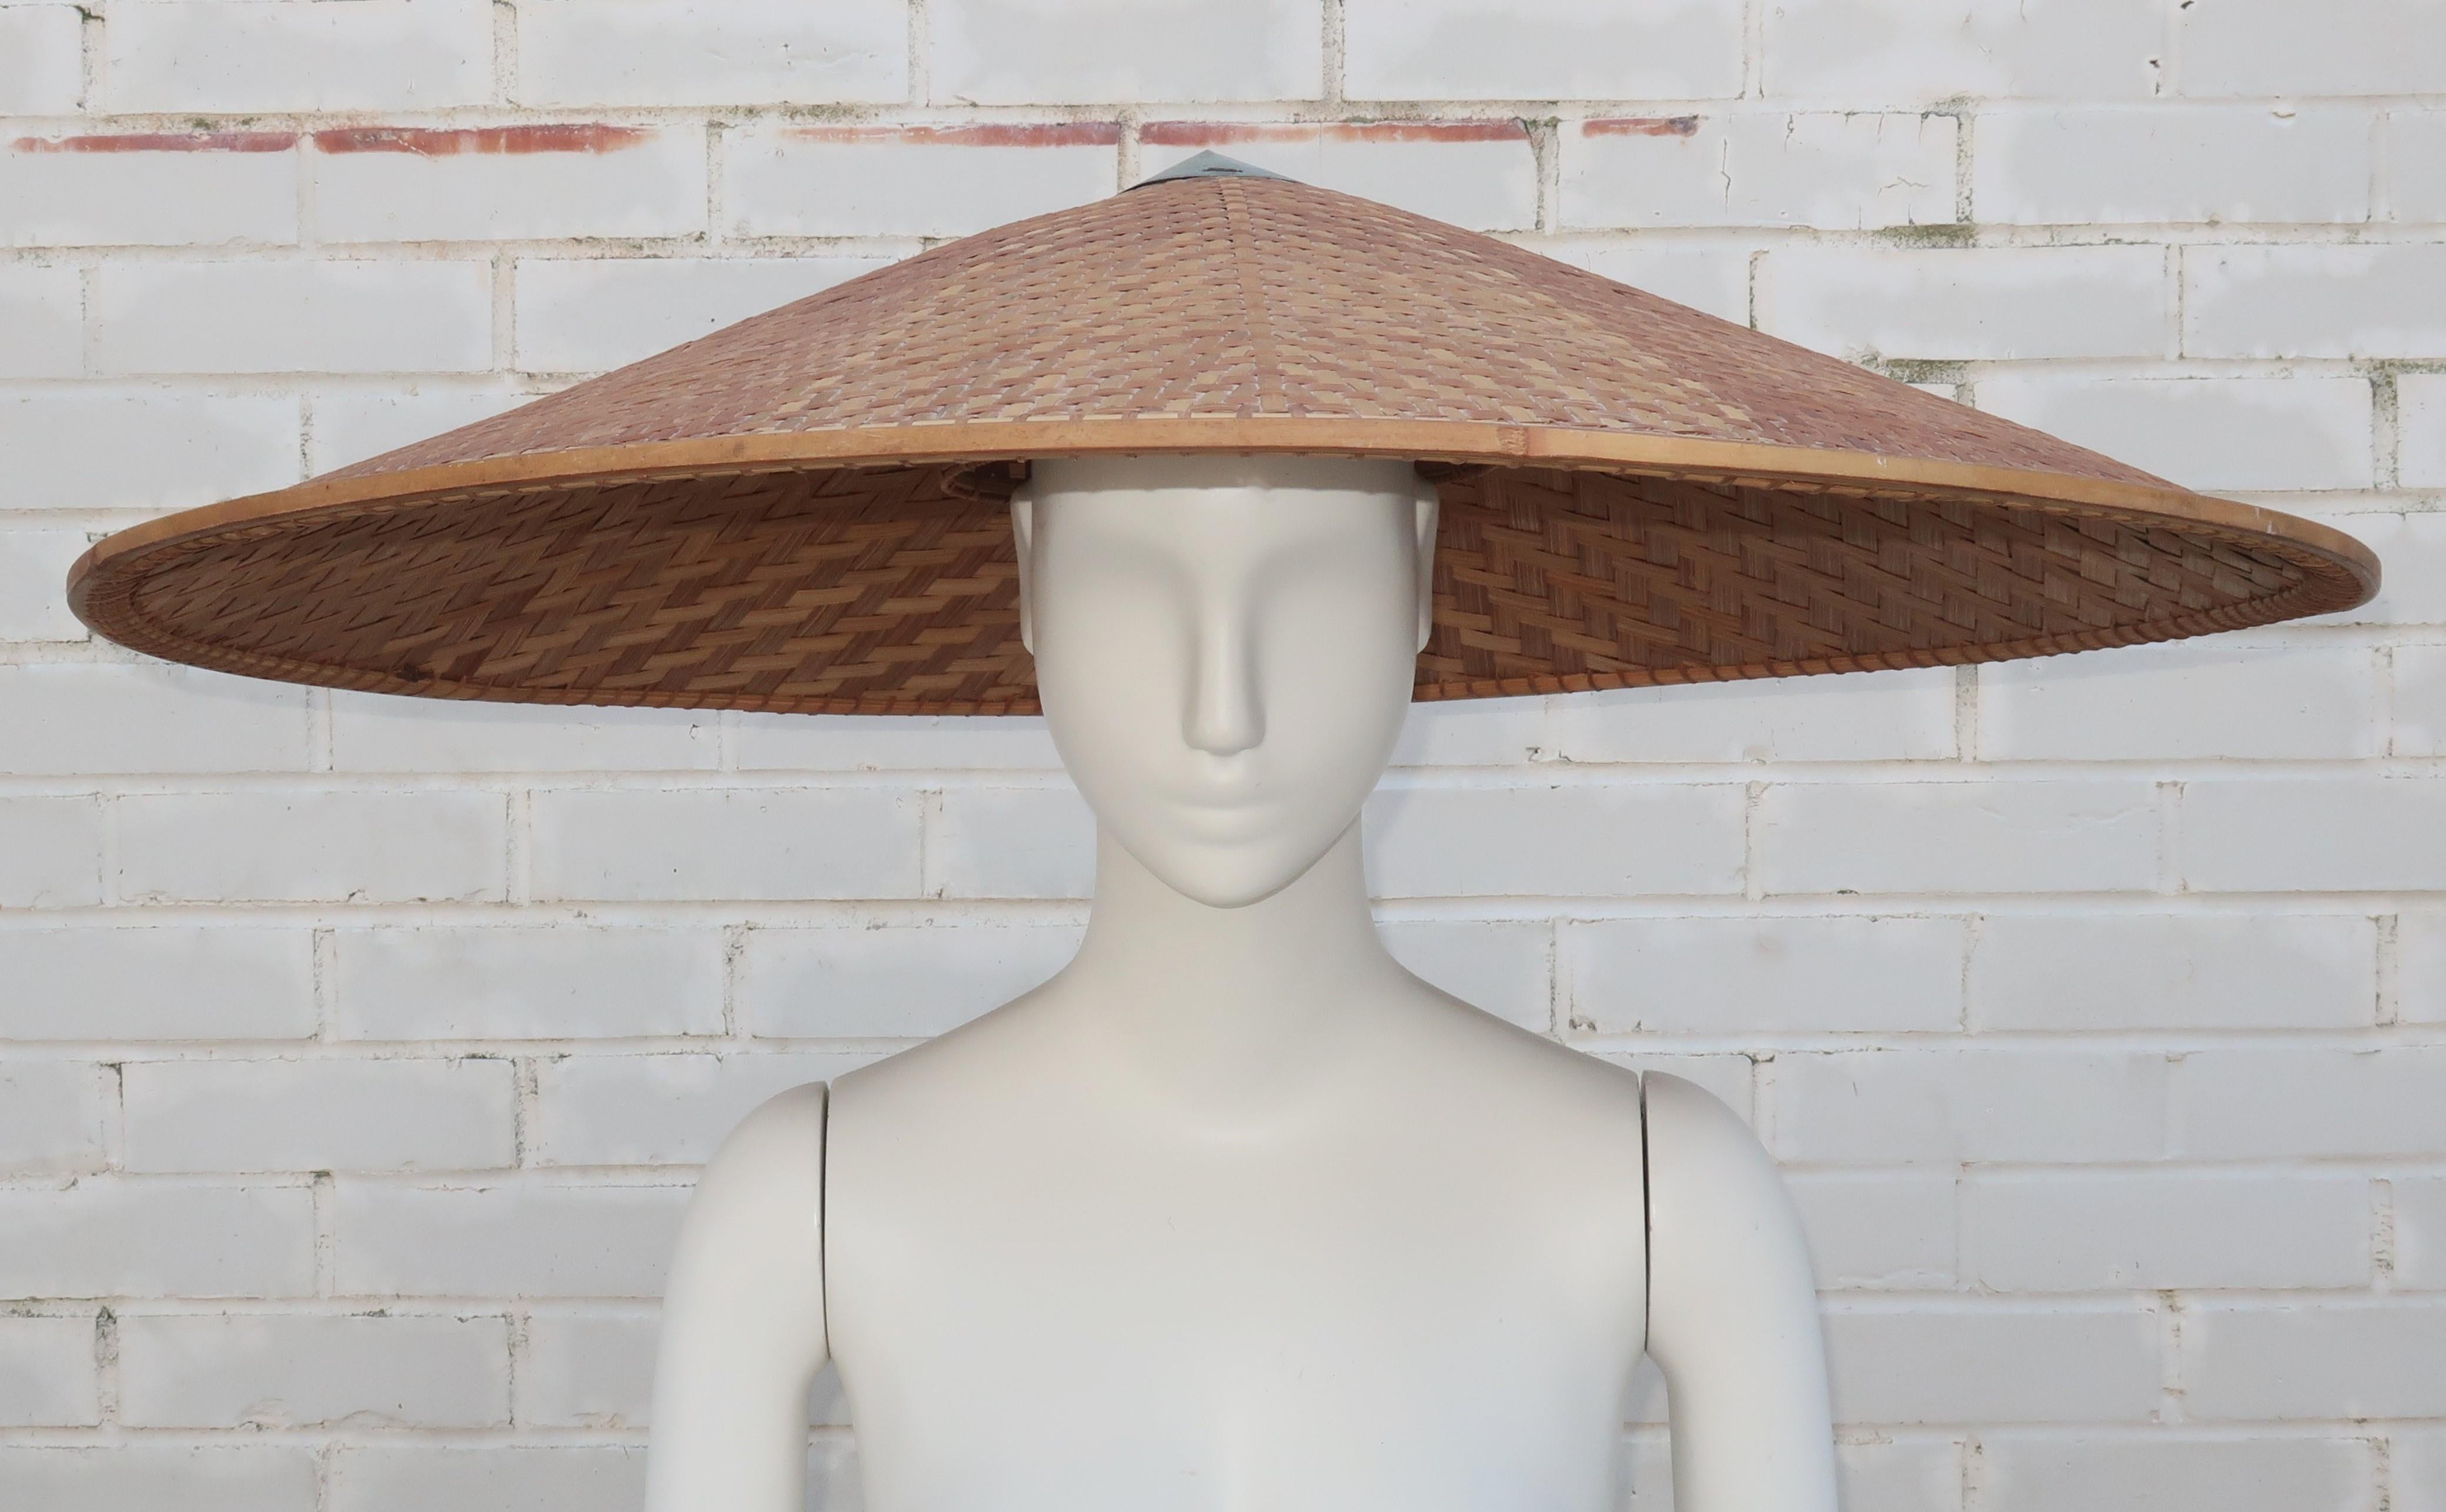 Wer braucht schon einen Regenschirm, wenn man diesen fabelhaften Hut hat!?  Es handelt sich um einen extra großen geflochtenen Weidenhut aus den 1950er Jahren mit einem Rand aus Bambus und Stroh und einer Metallkappe.  Der Innenraum ist mit einem